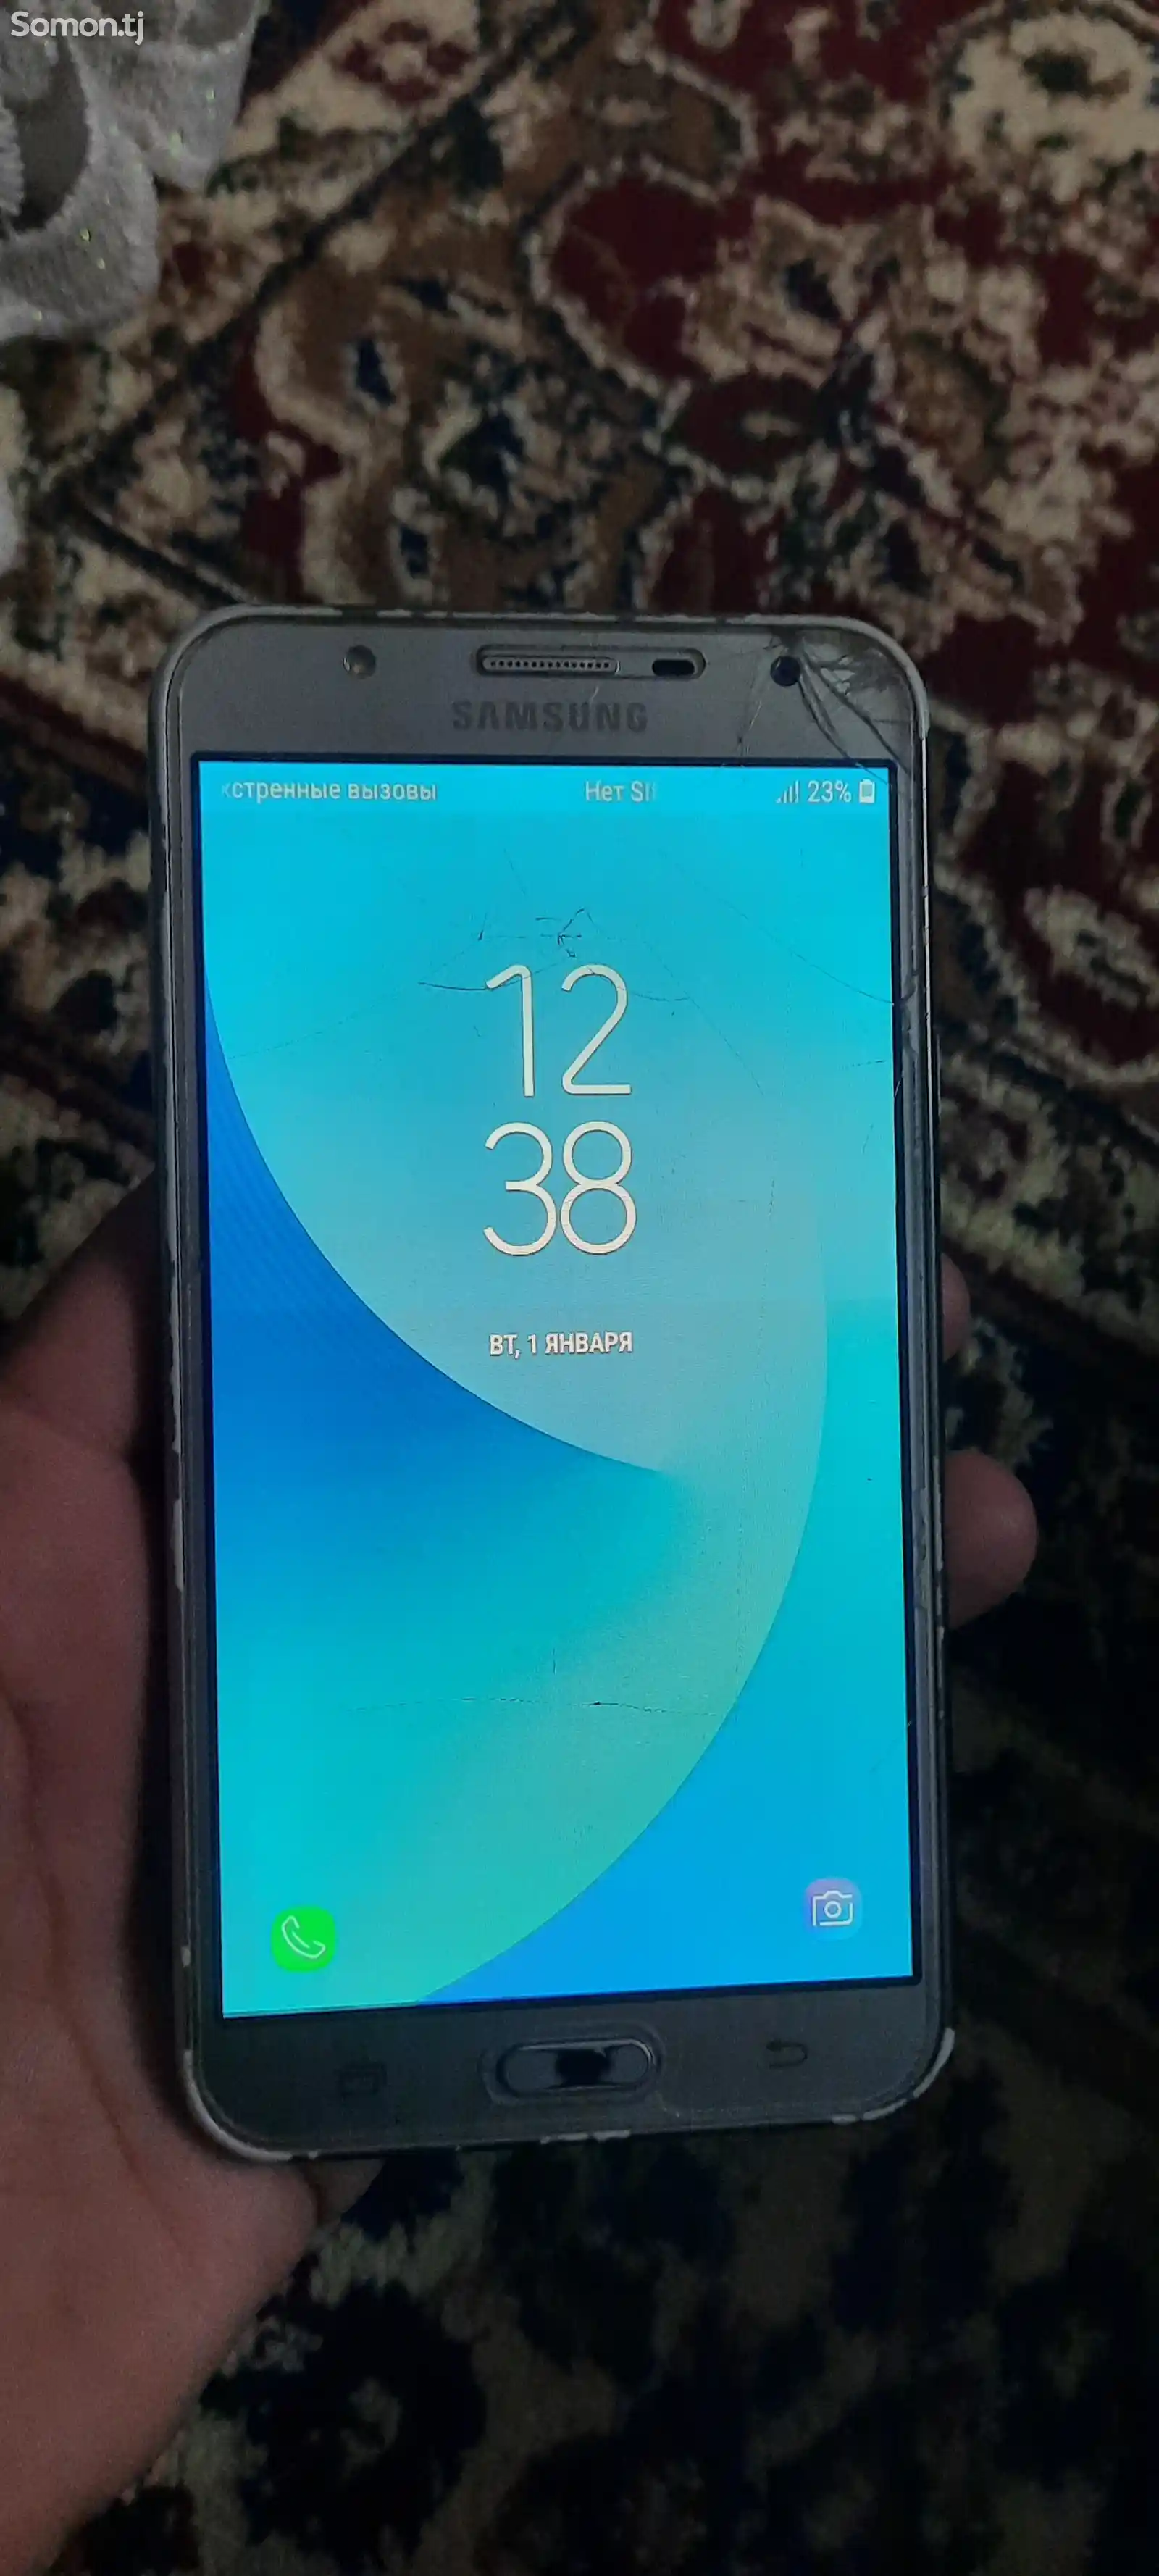 Samsung Galaxy J7 neo-1